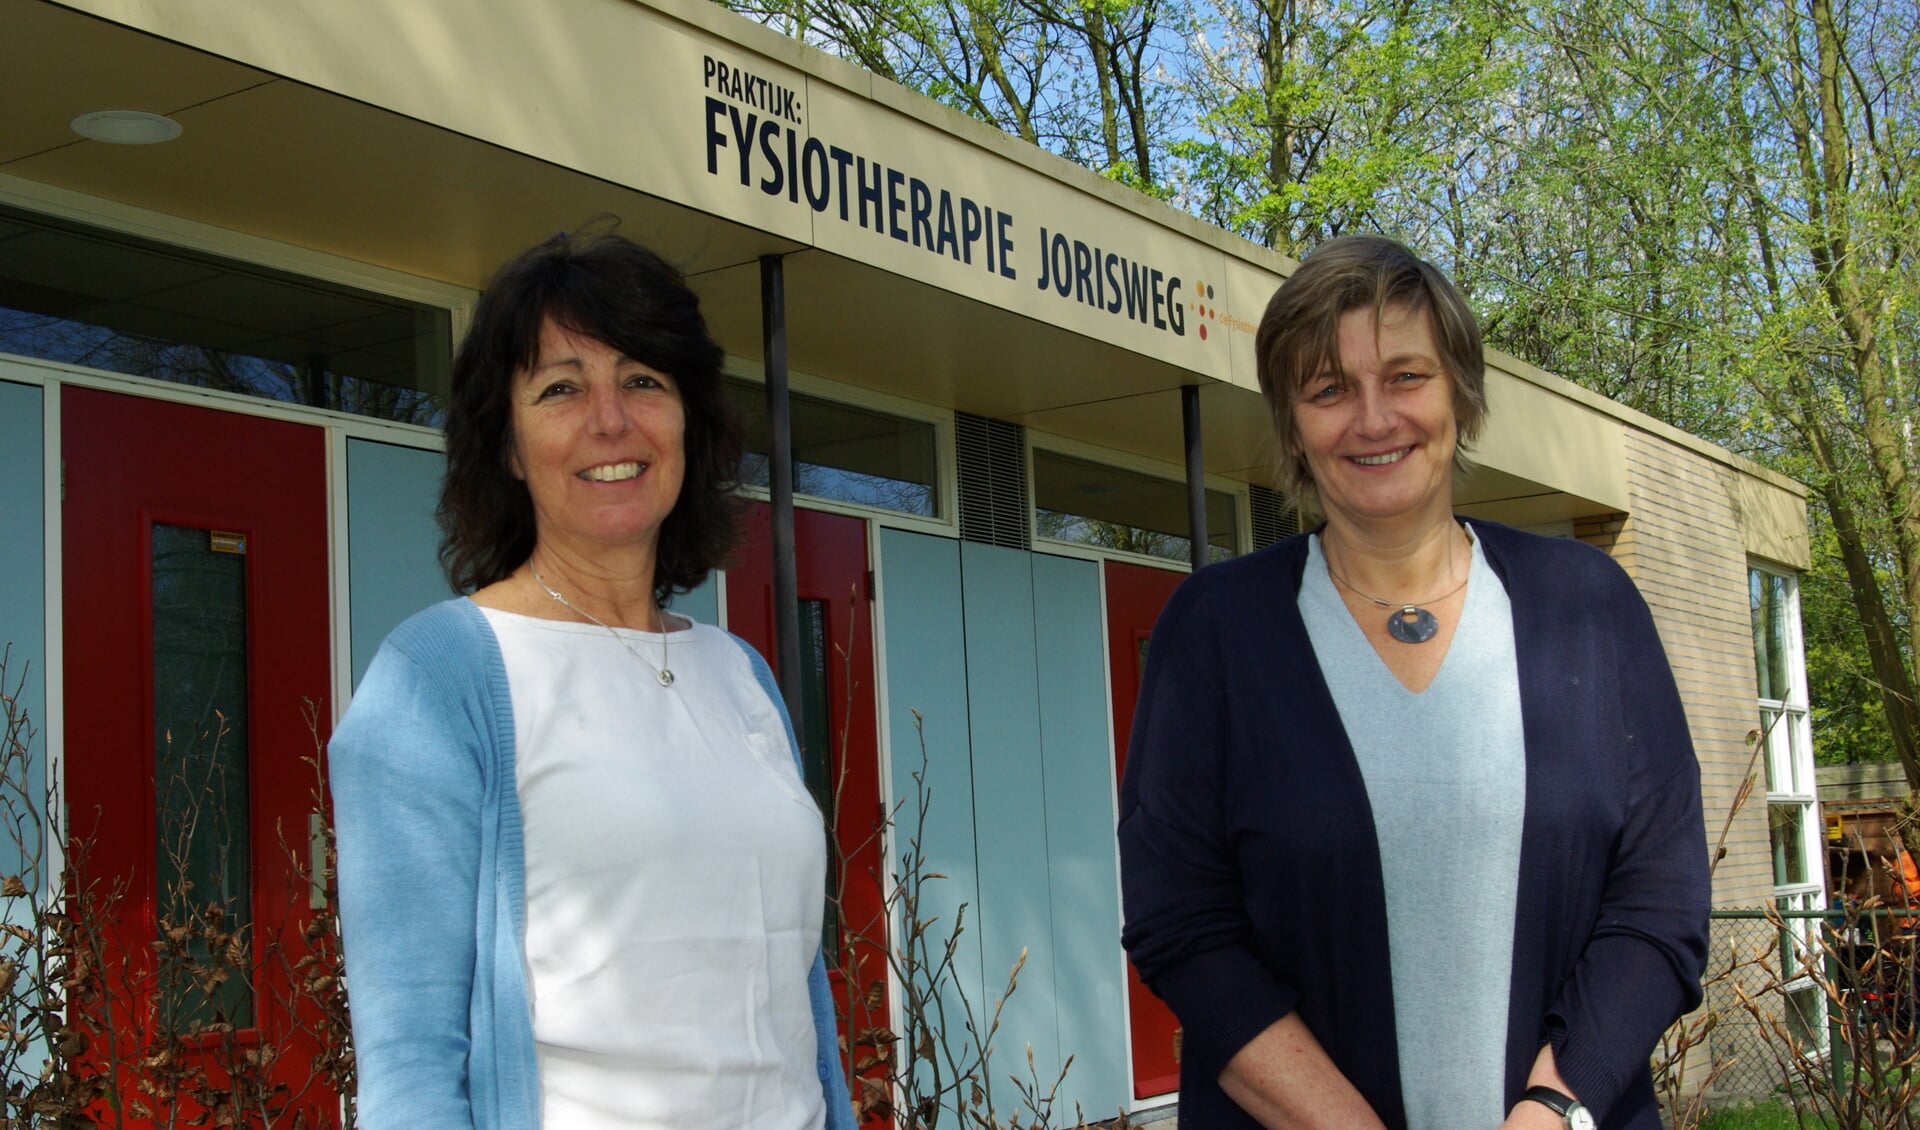 Marianne Kouwenhoven en Anneloes de Zeeuw van Fysiotherapie Jorisweg, met achter hen de nieuwe gevelreclame. 